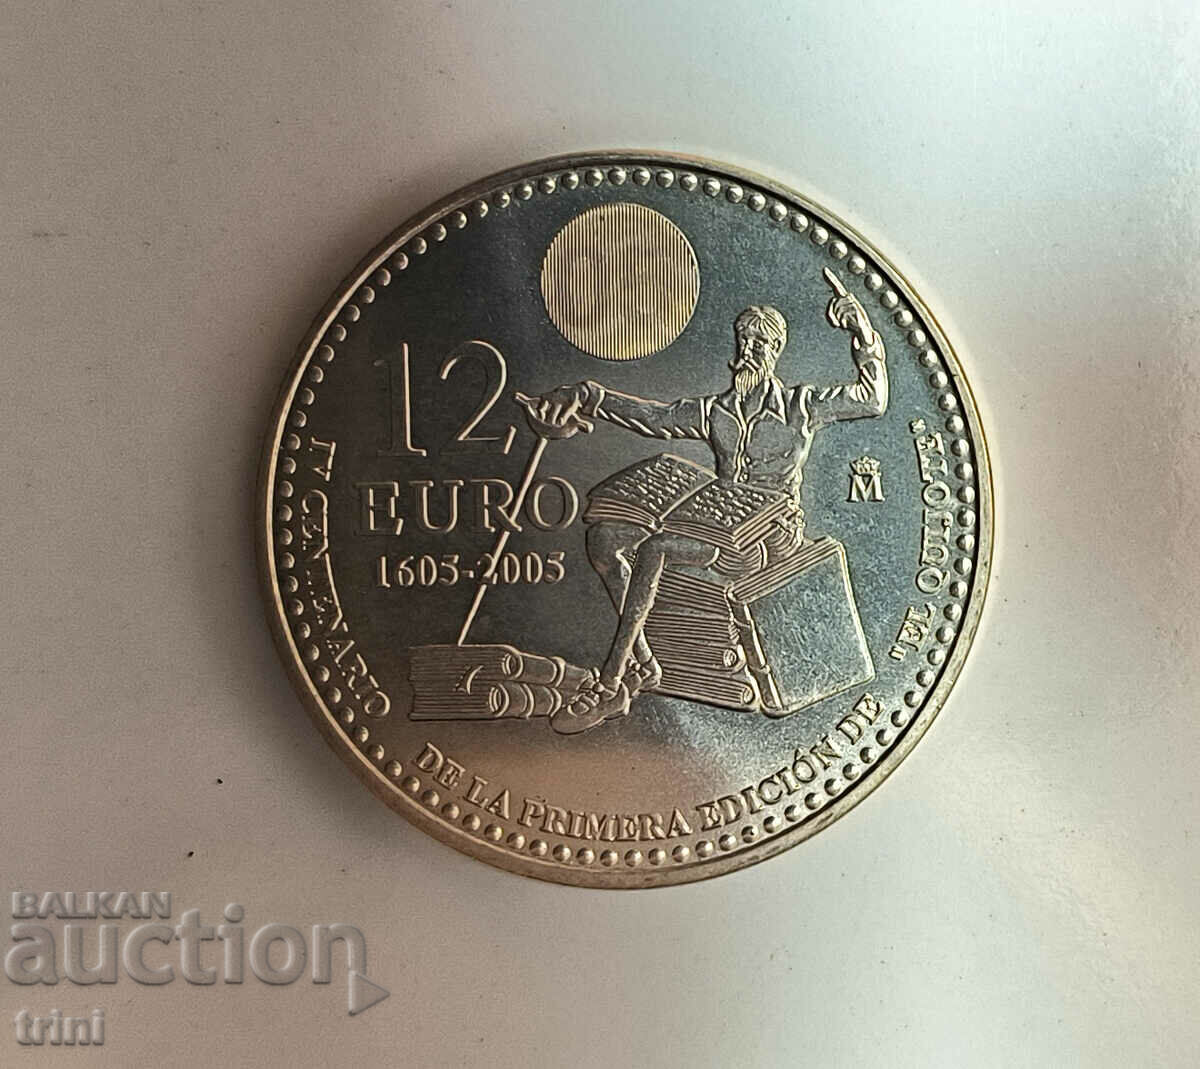 Spania 12 euro 2005 400 ani Don Quijote d135